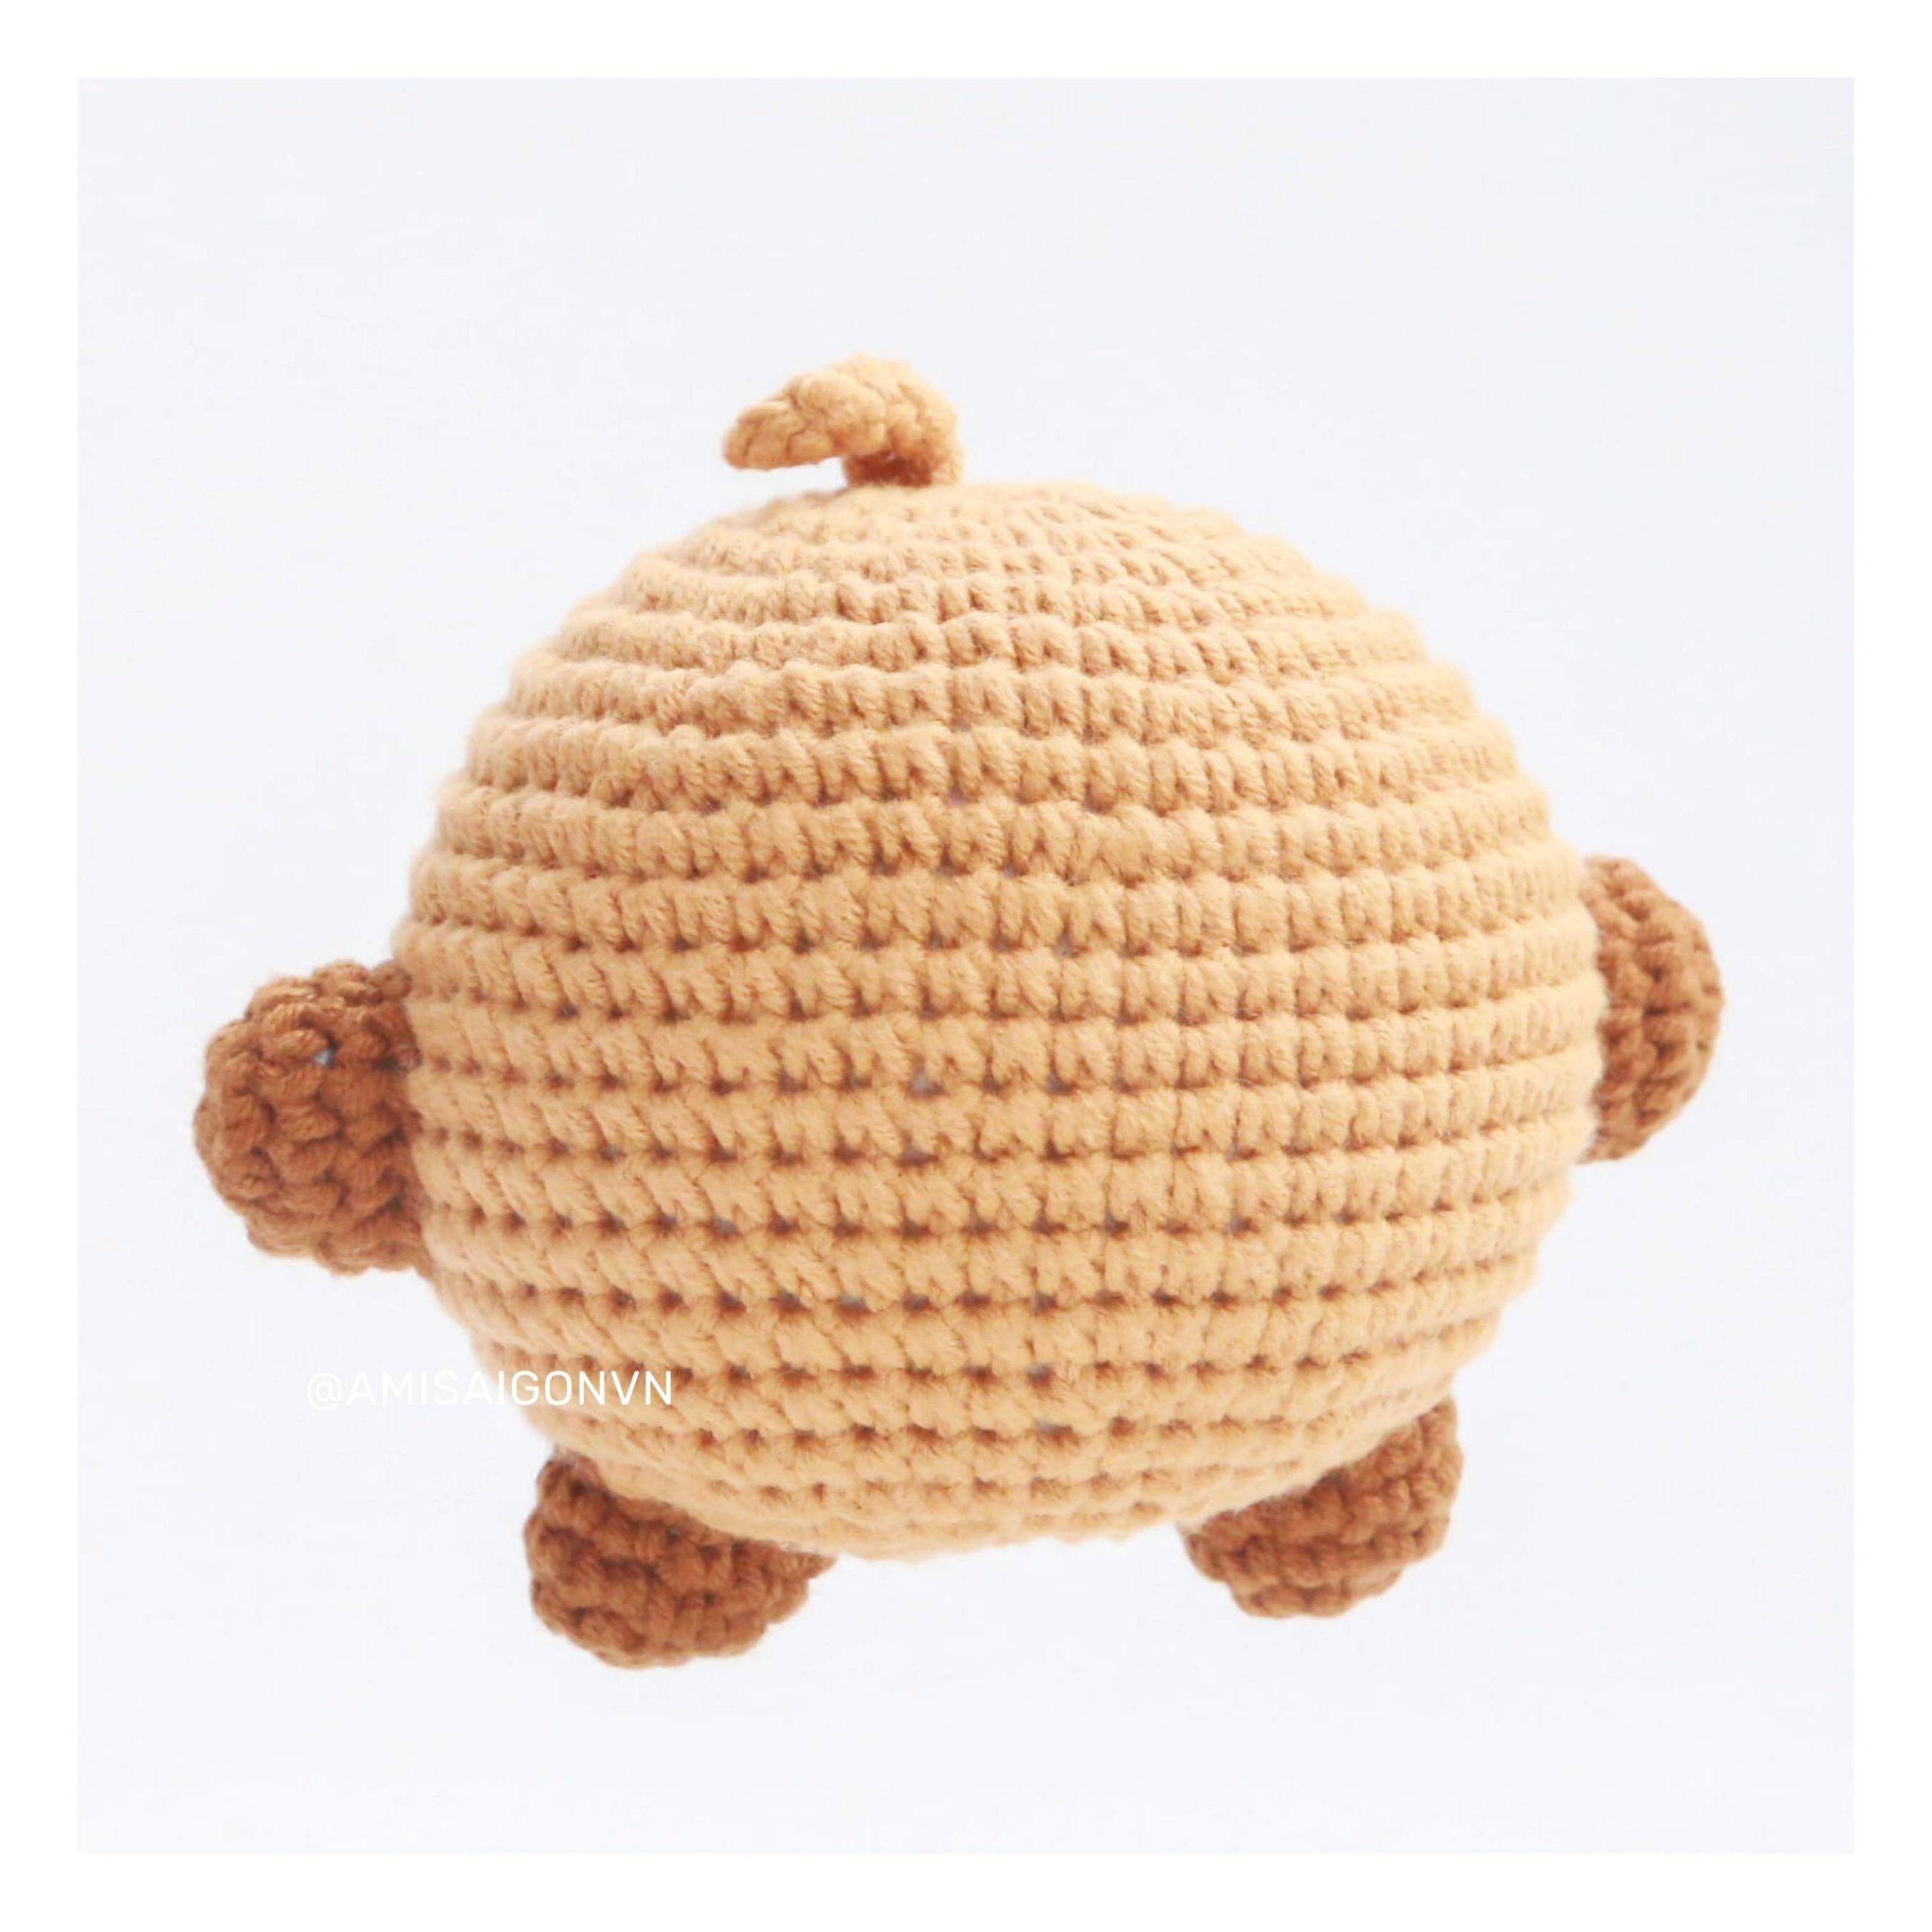 shooky-amigurumi-crochet-pattern-amisaigon-bt21-bts (7)